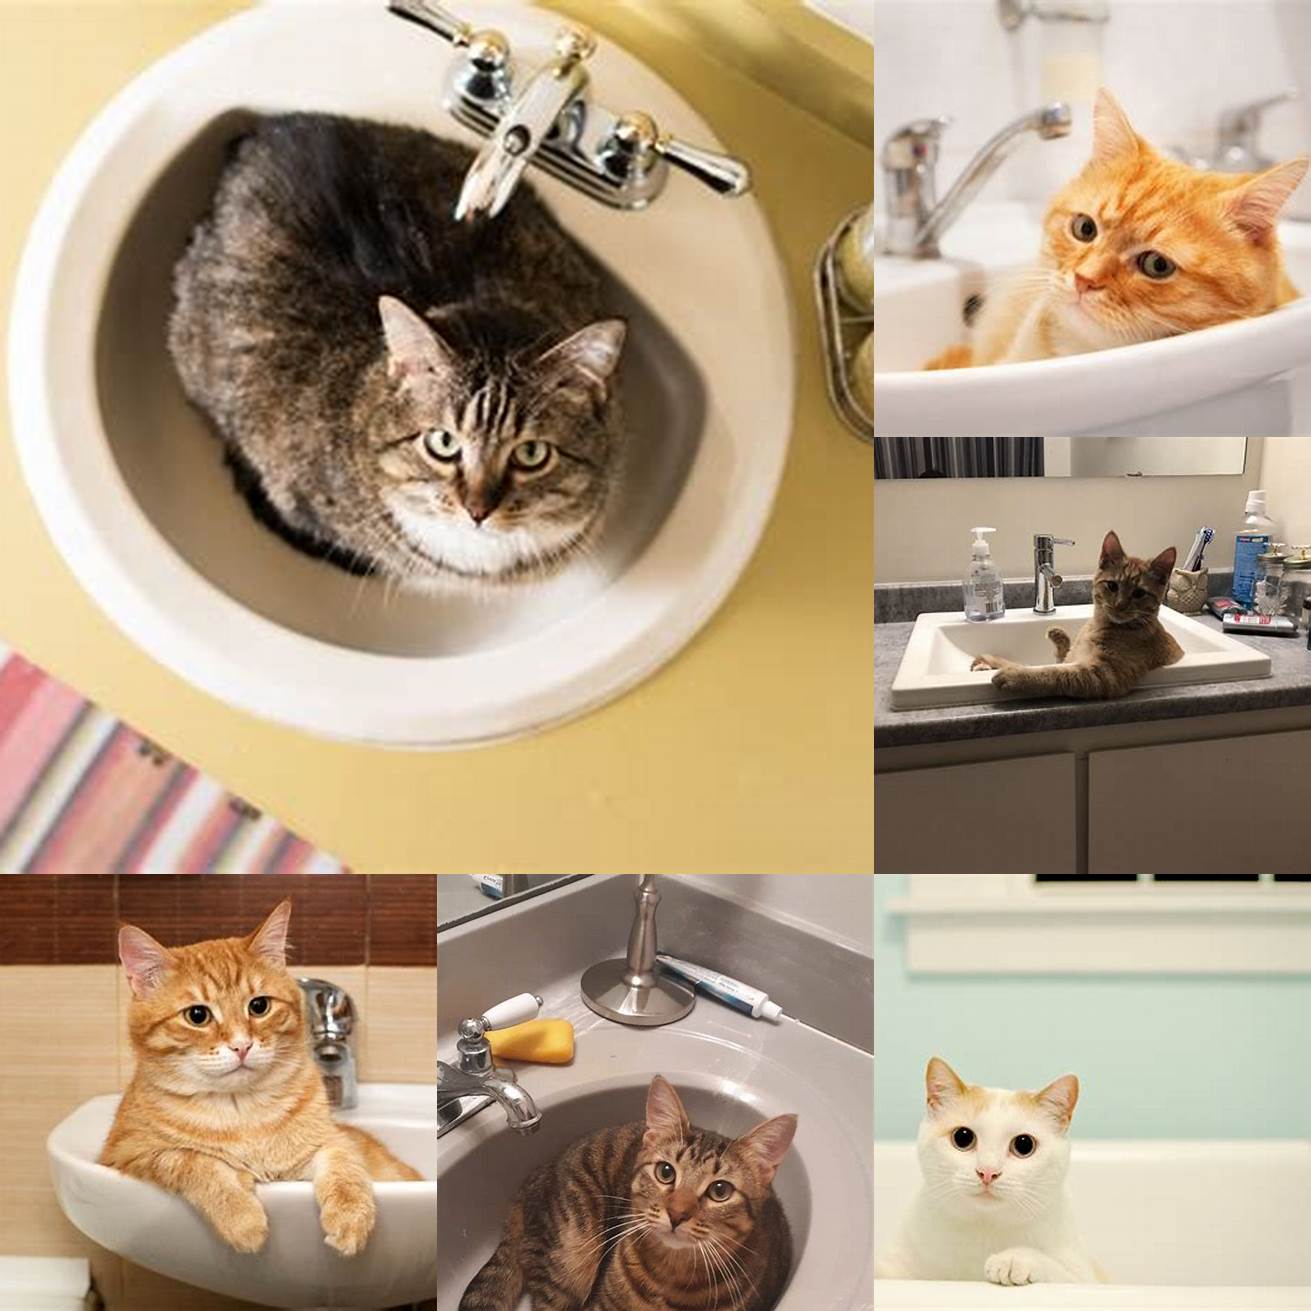 Cat in a sink or bathtub